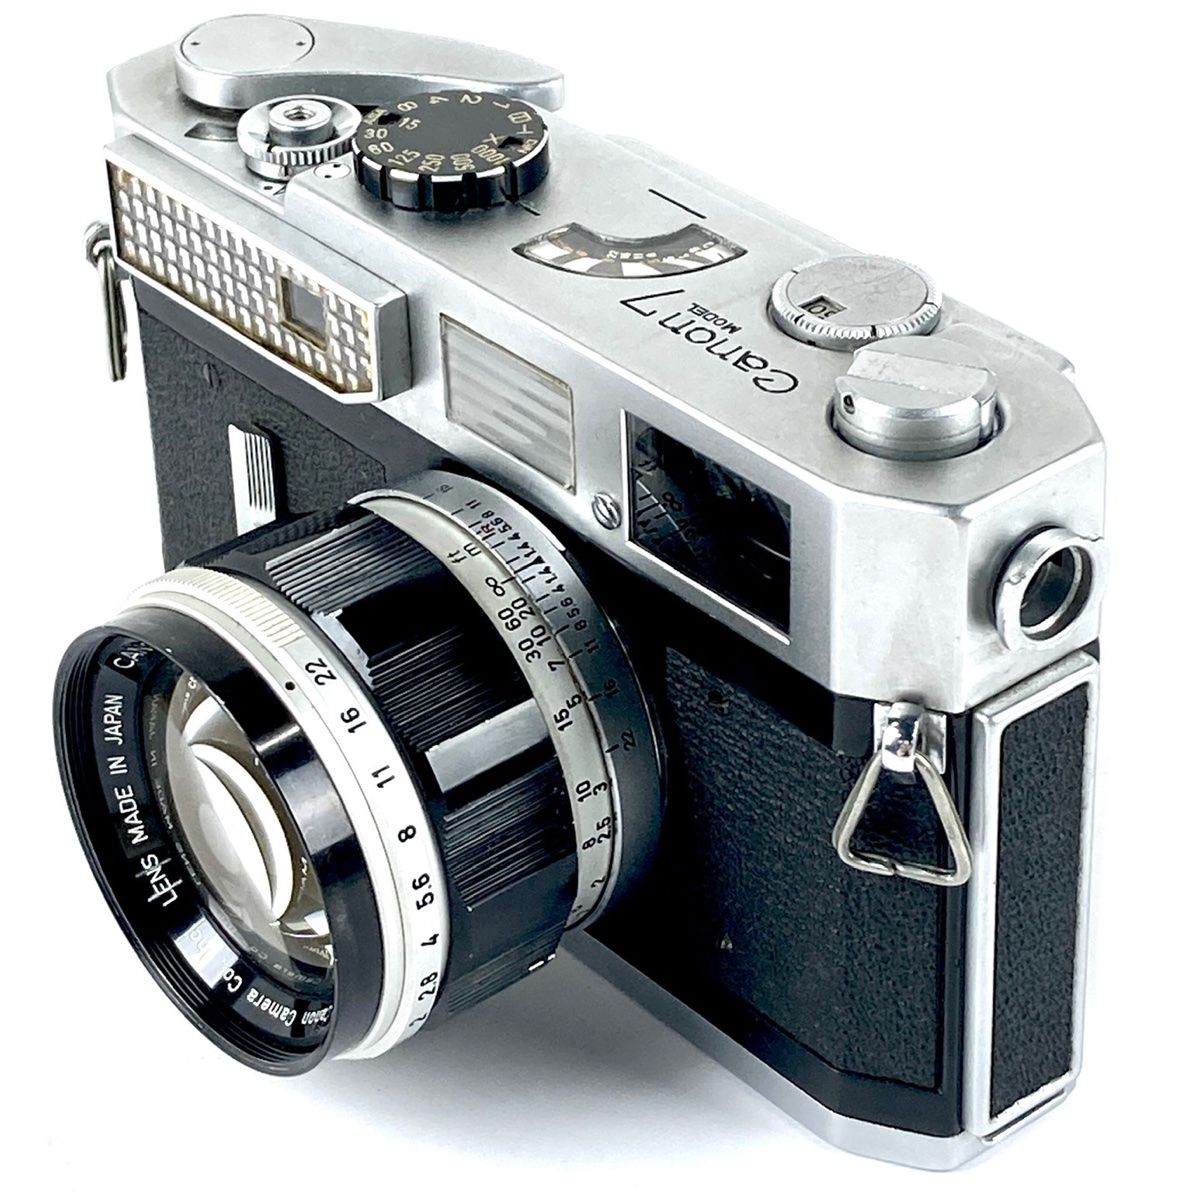 Canon model 7 50mm f1.4 レンジファインダー - フィルムカメラ